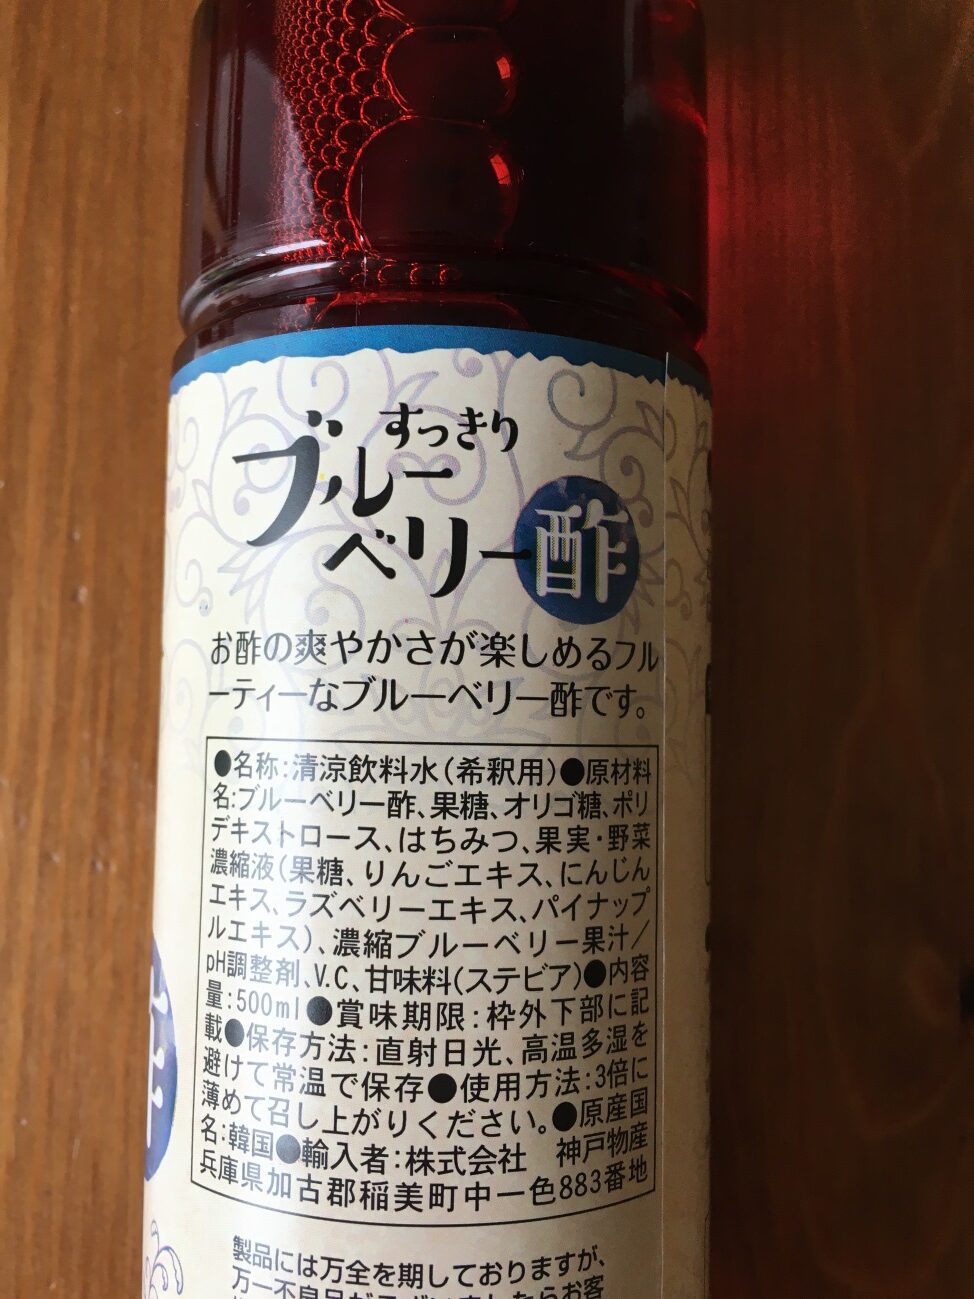 業務スーパーのすっきりブルーベリー酢の原材料名と原産国名の表記